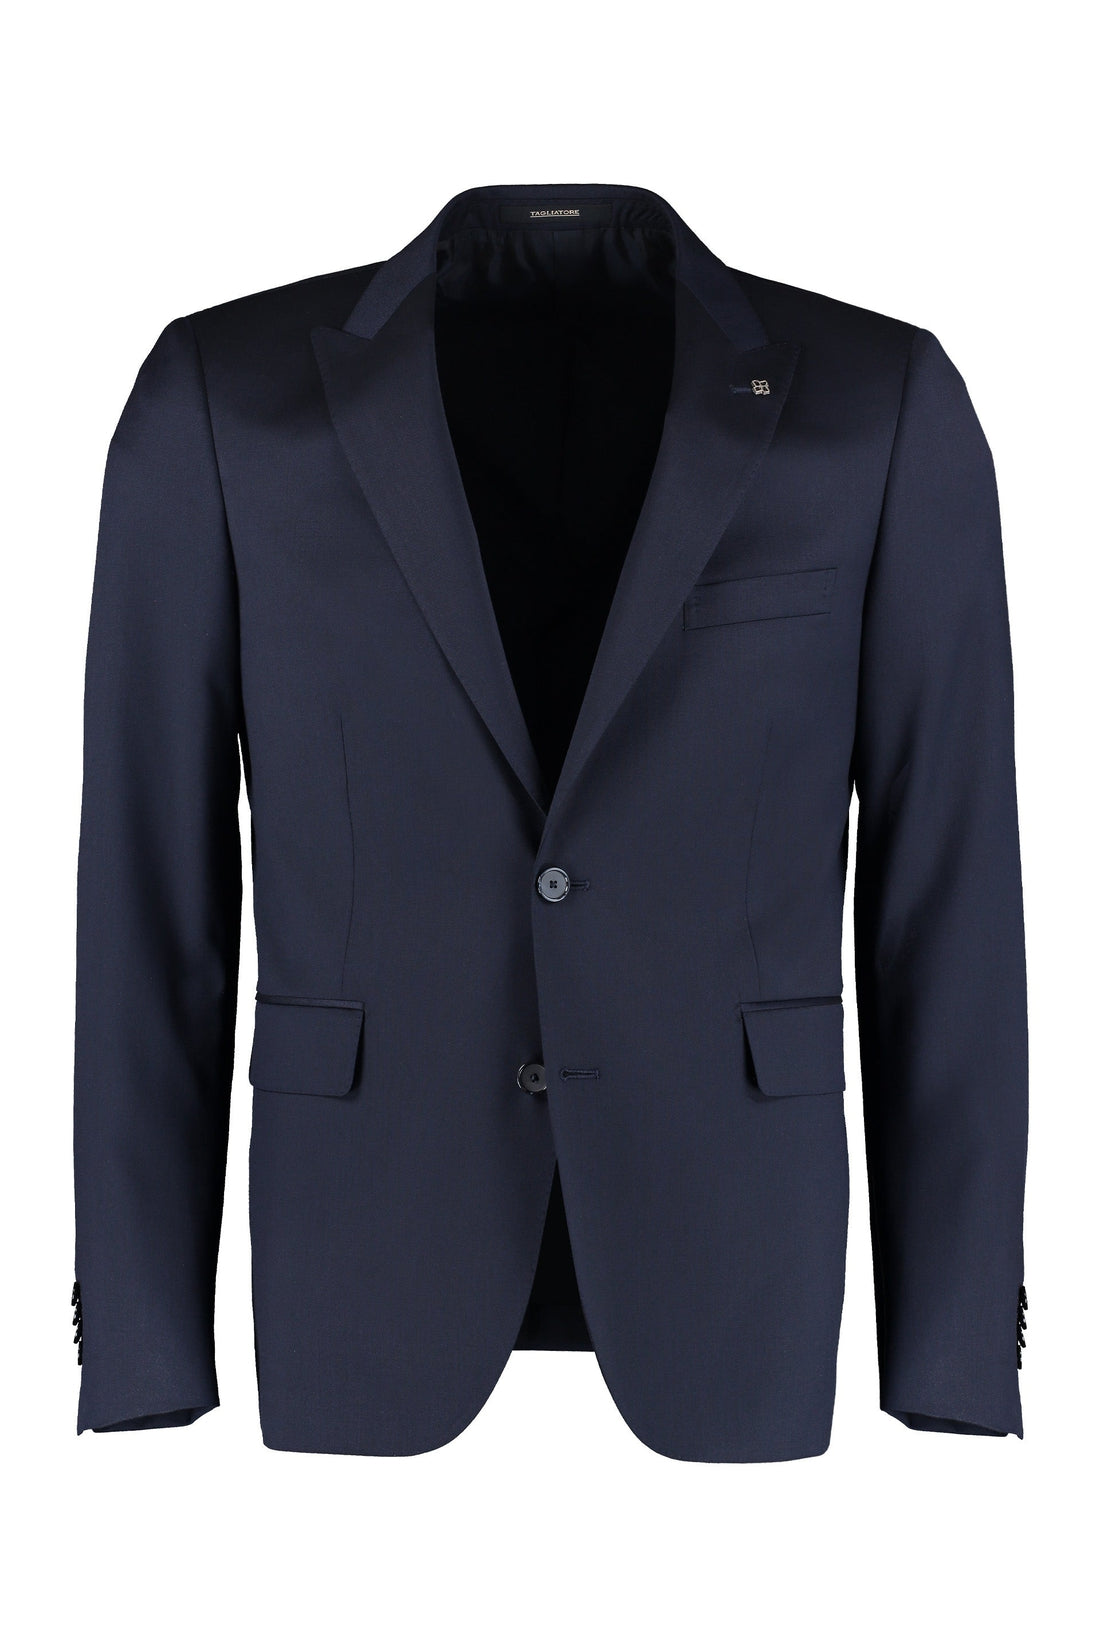 Tagliatore-OUTLET-SALE-Virgin wool two-piece suit-ARCHIVIST